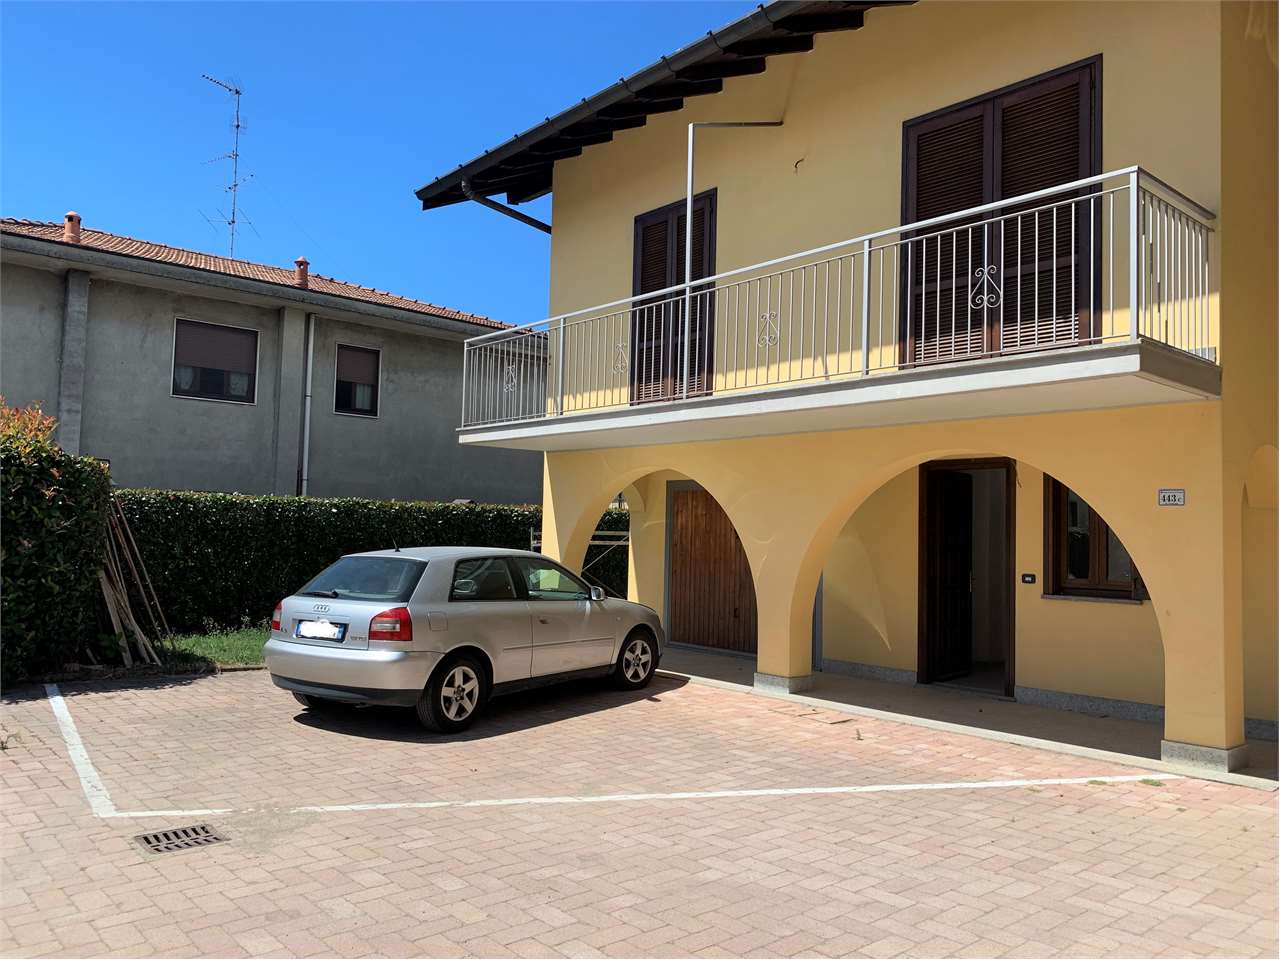 Vendita Villetta a schiera Casa/Villa Cavaria con Premezzo via cantalupa  443 420988